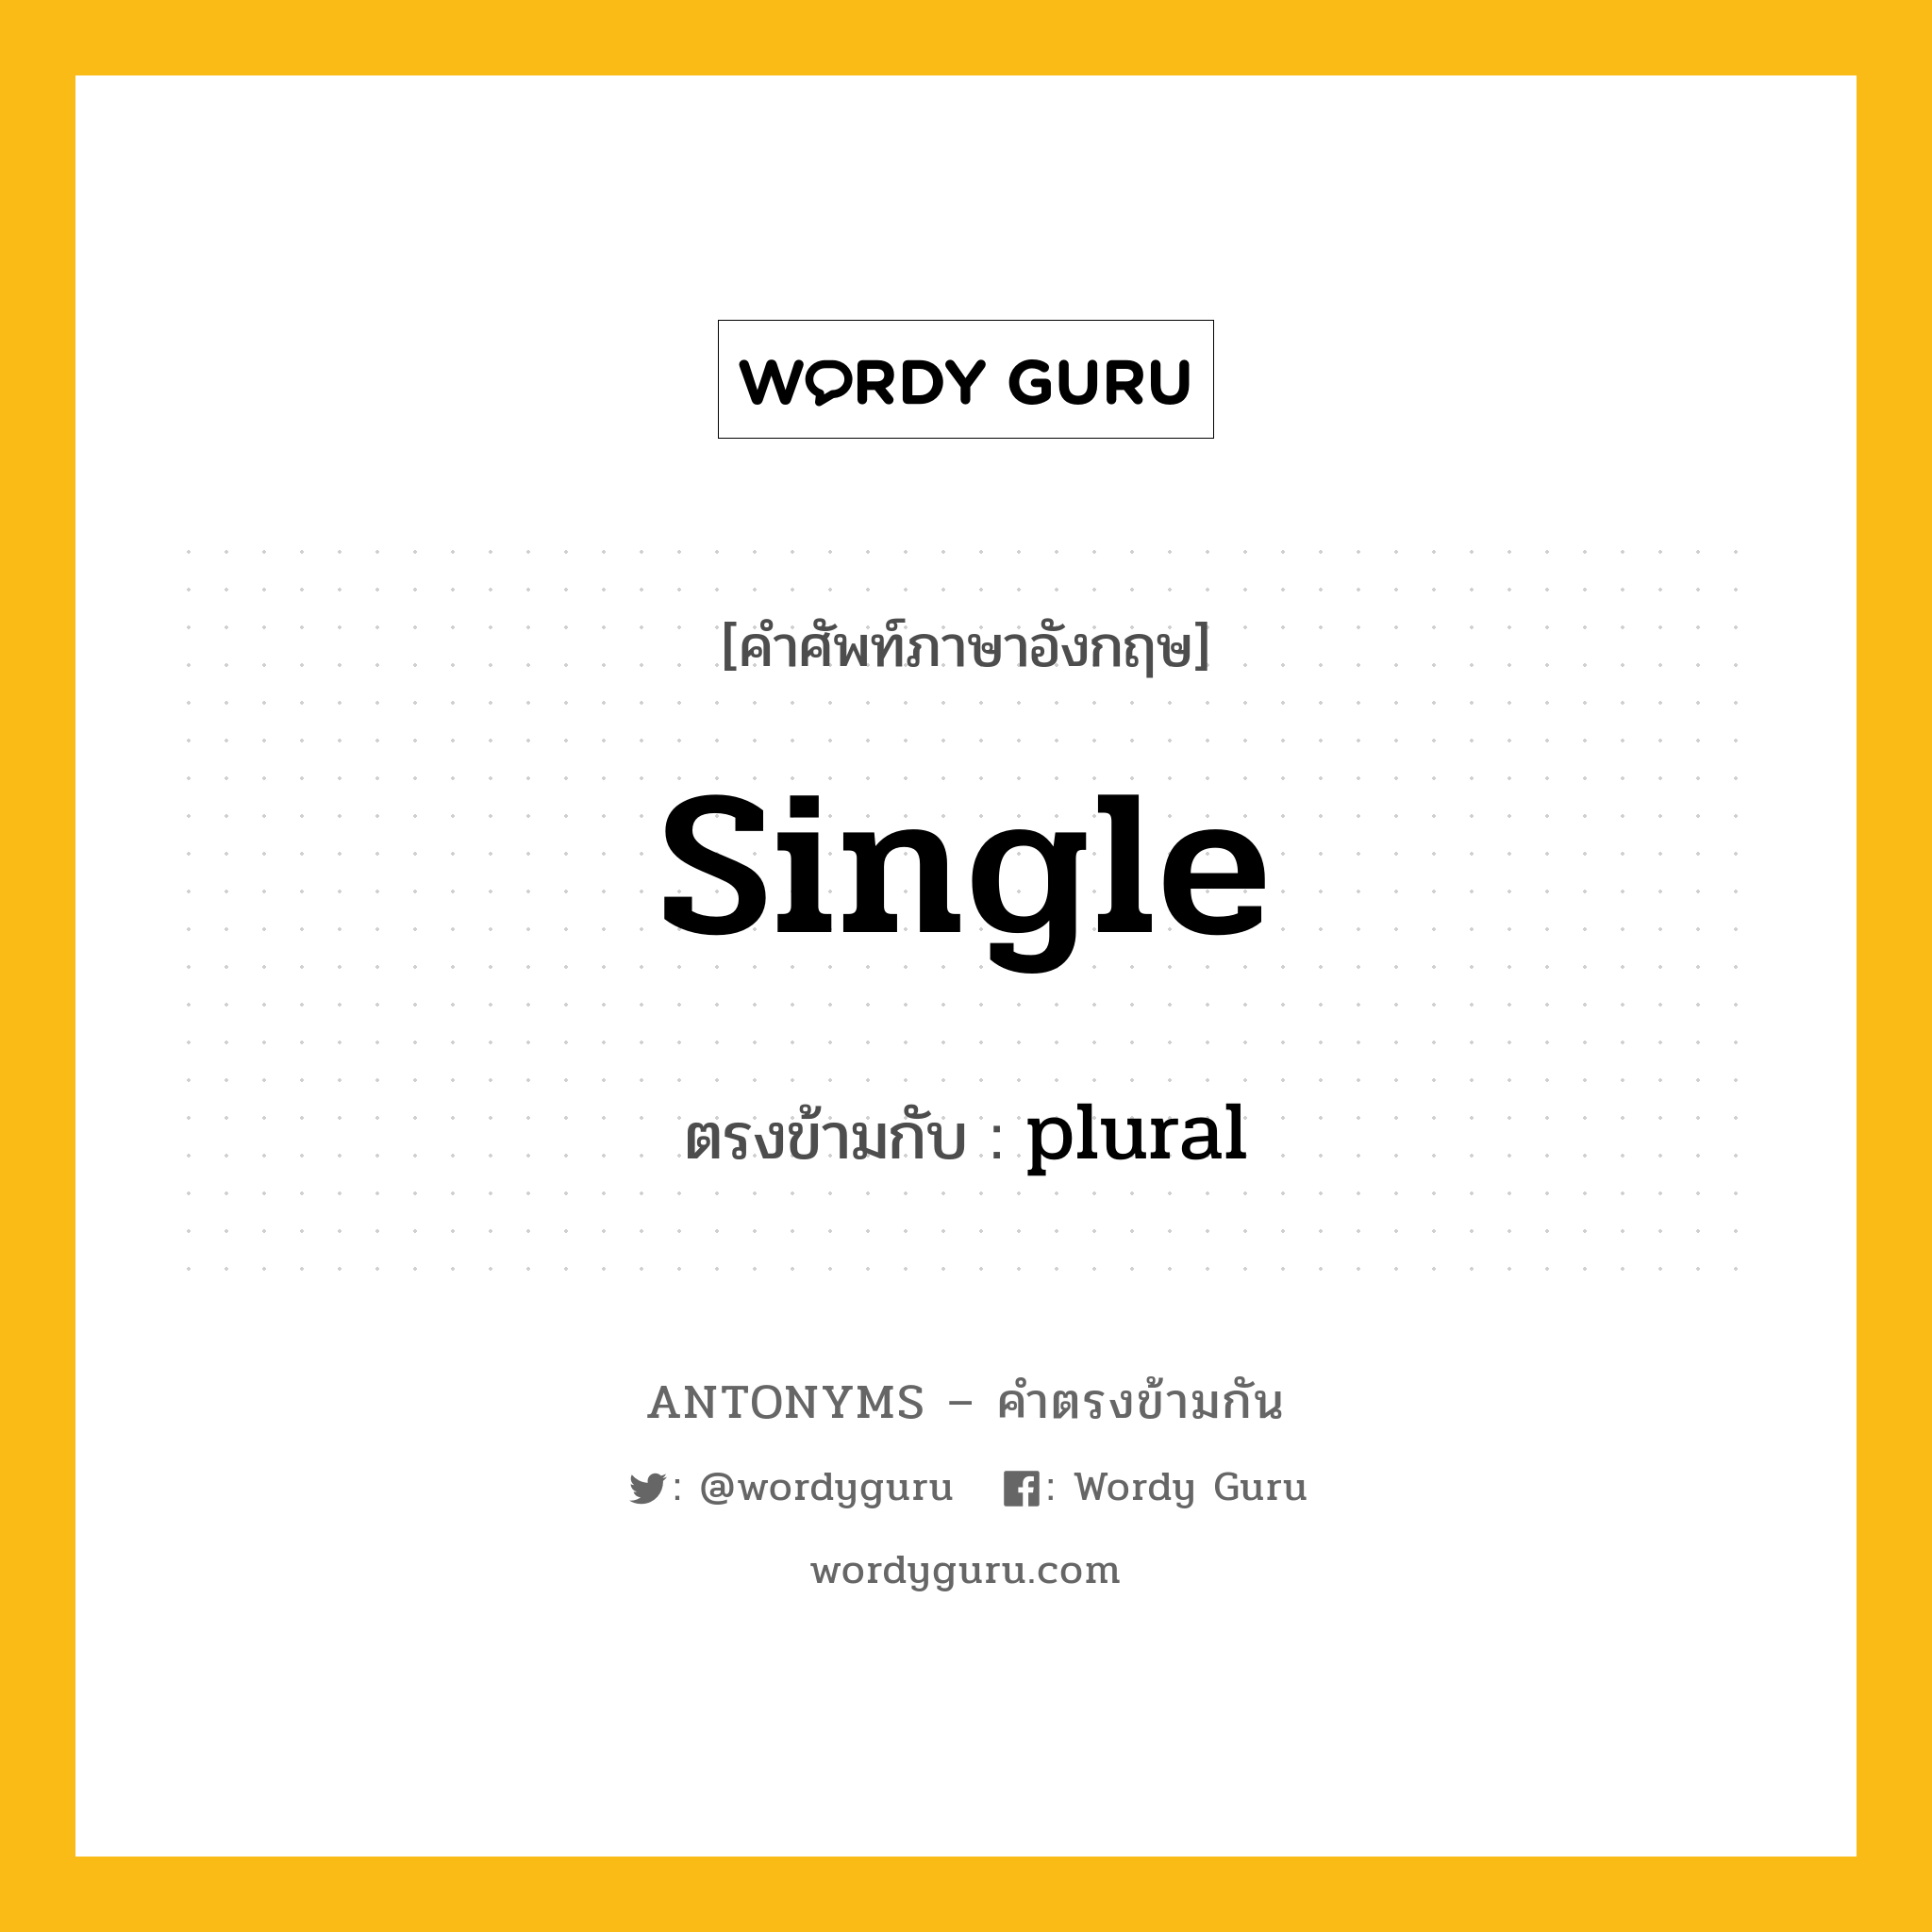 single เป็นคำตรงข้ามกับคำไหนบ้าง?, คำศัพท์ภาษาอังกฤษ single ตรงข้ามกับ plural หมวด plural